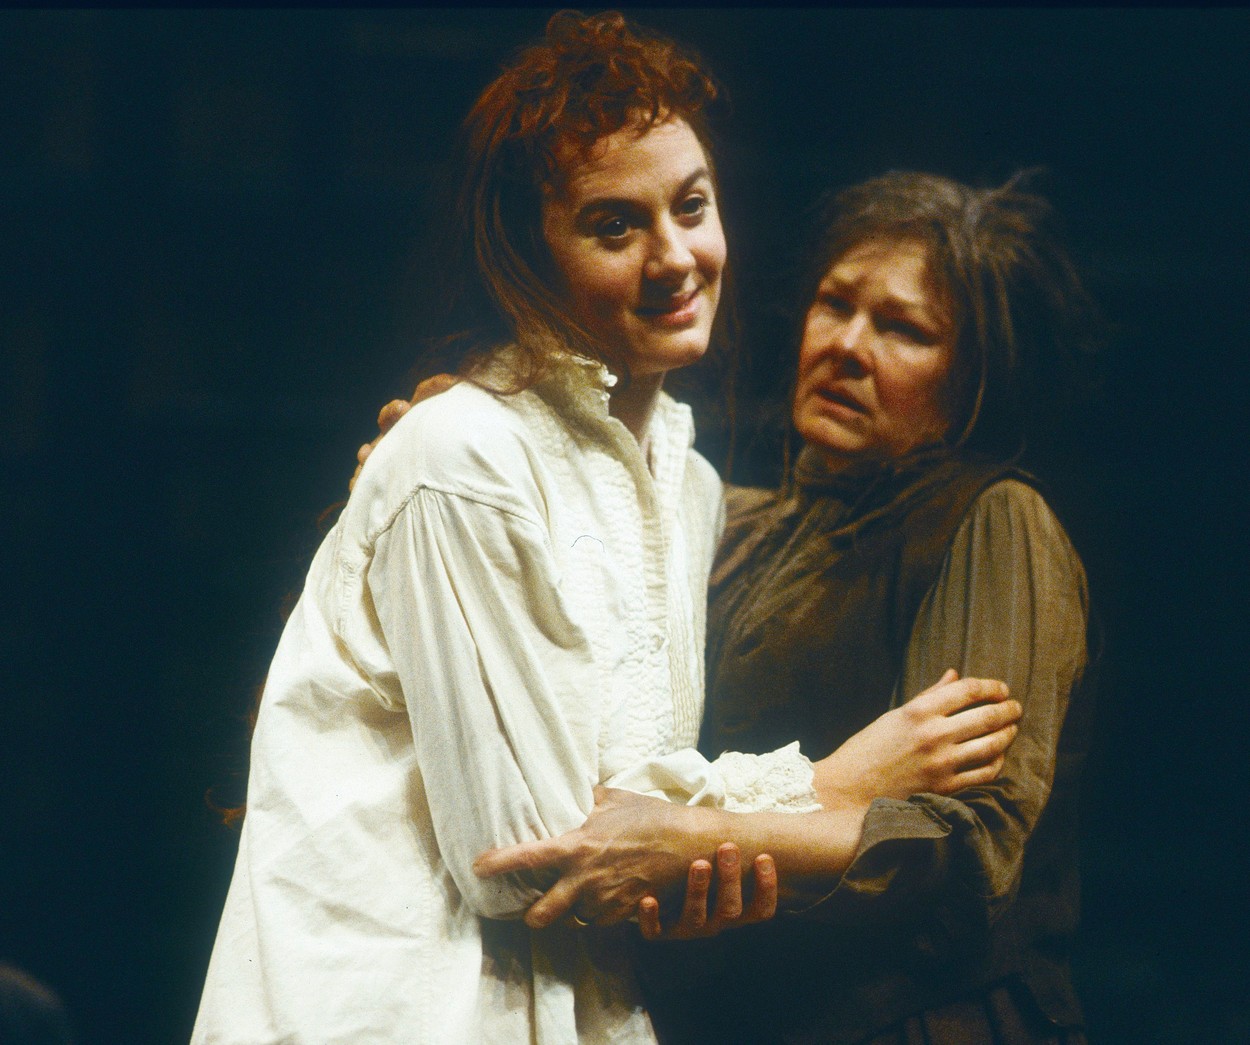 Judi Dench cu părul lung șaten și haine maro ține în brațe un actor pe o scenă de teatru